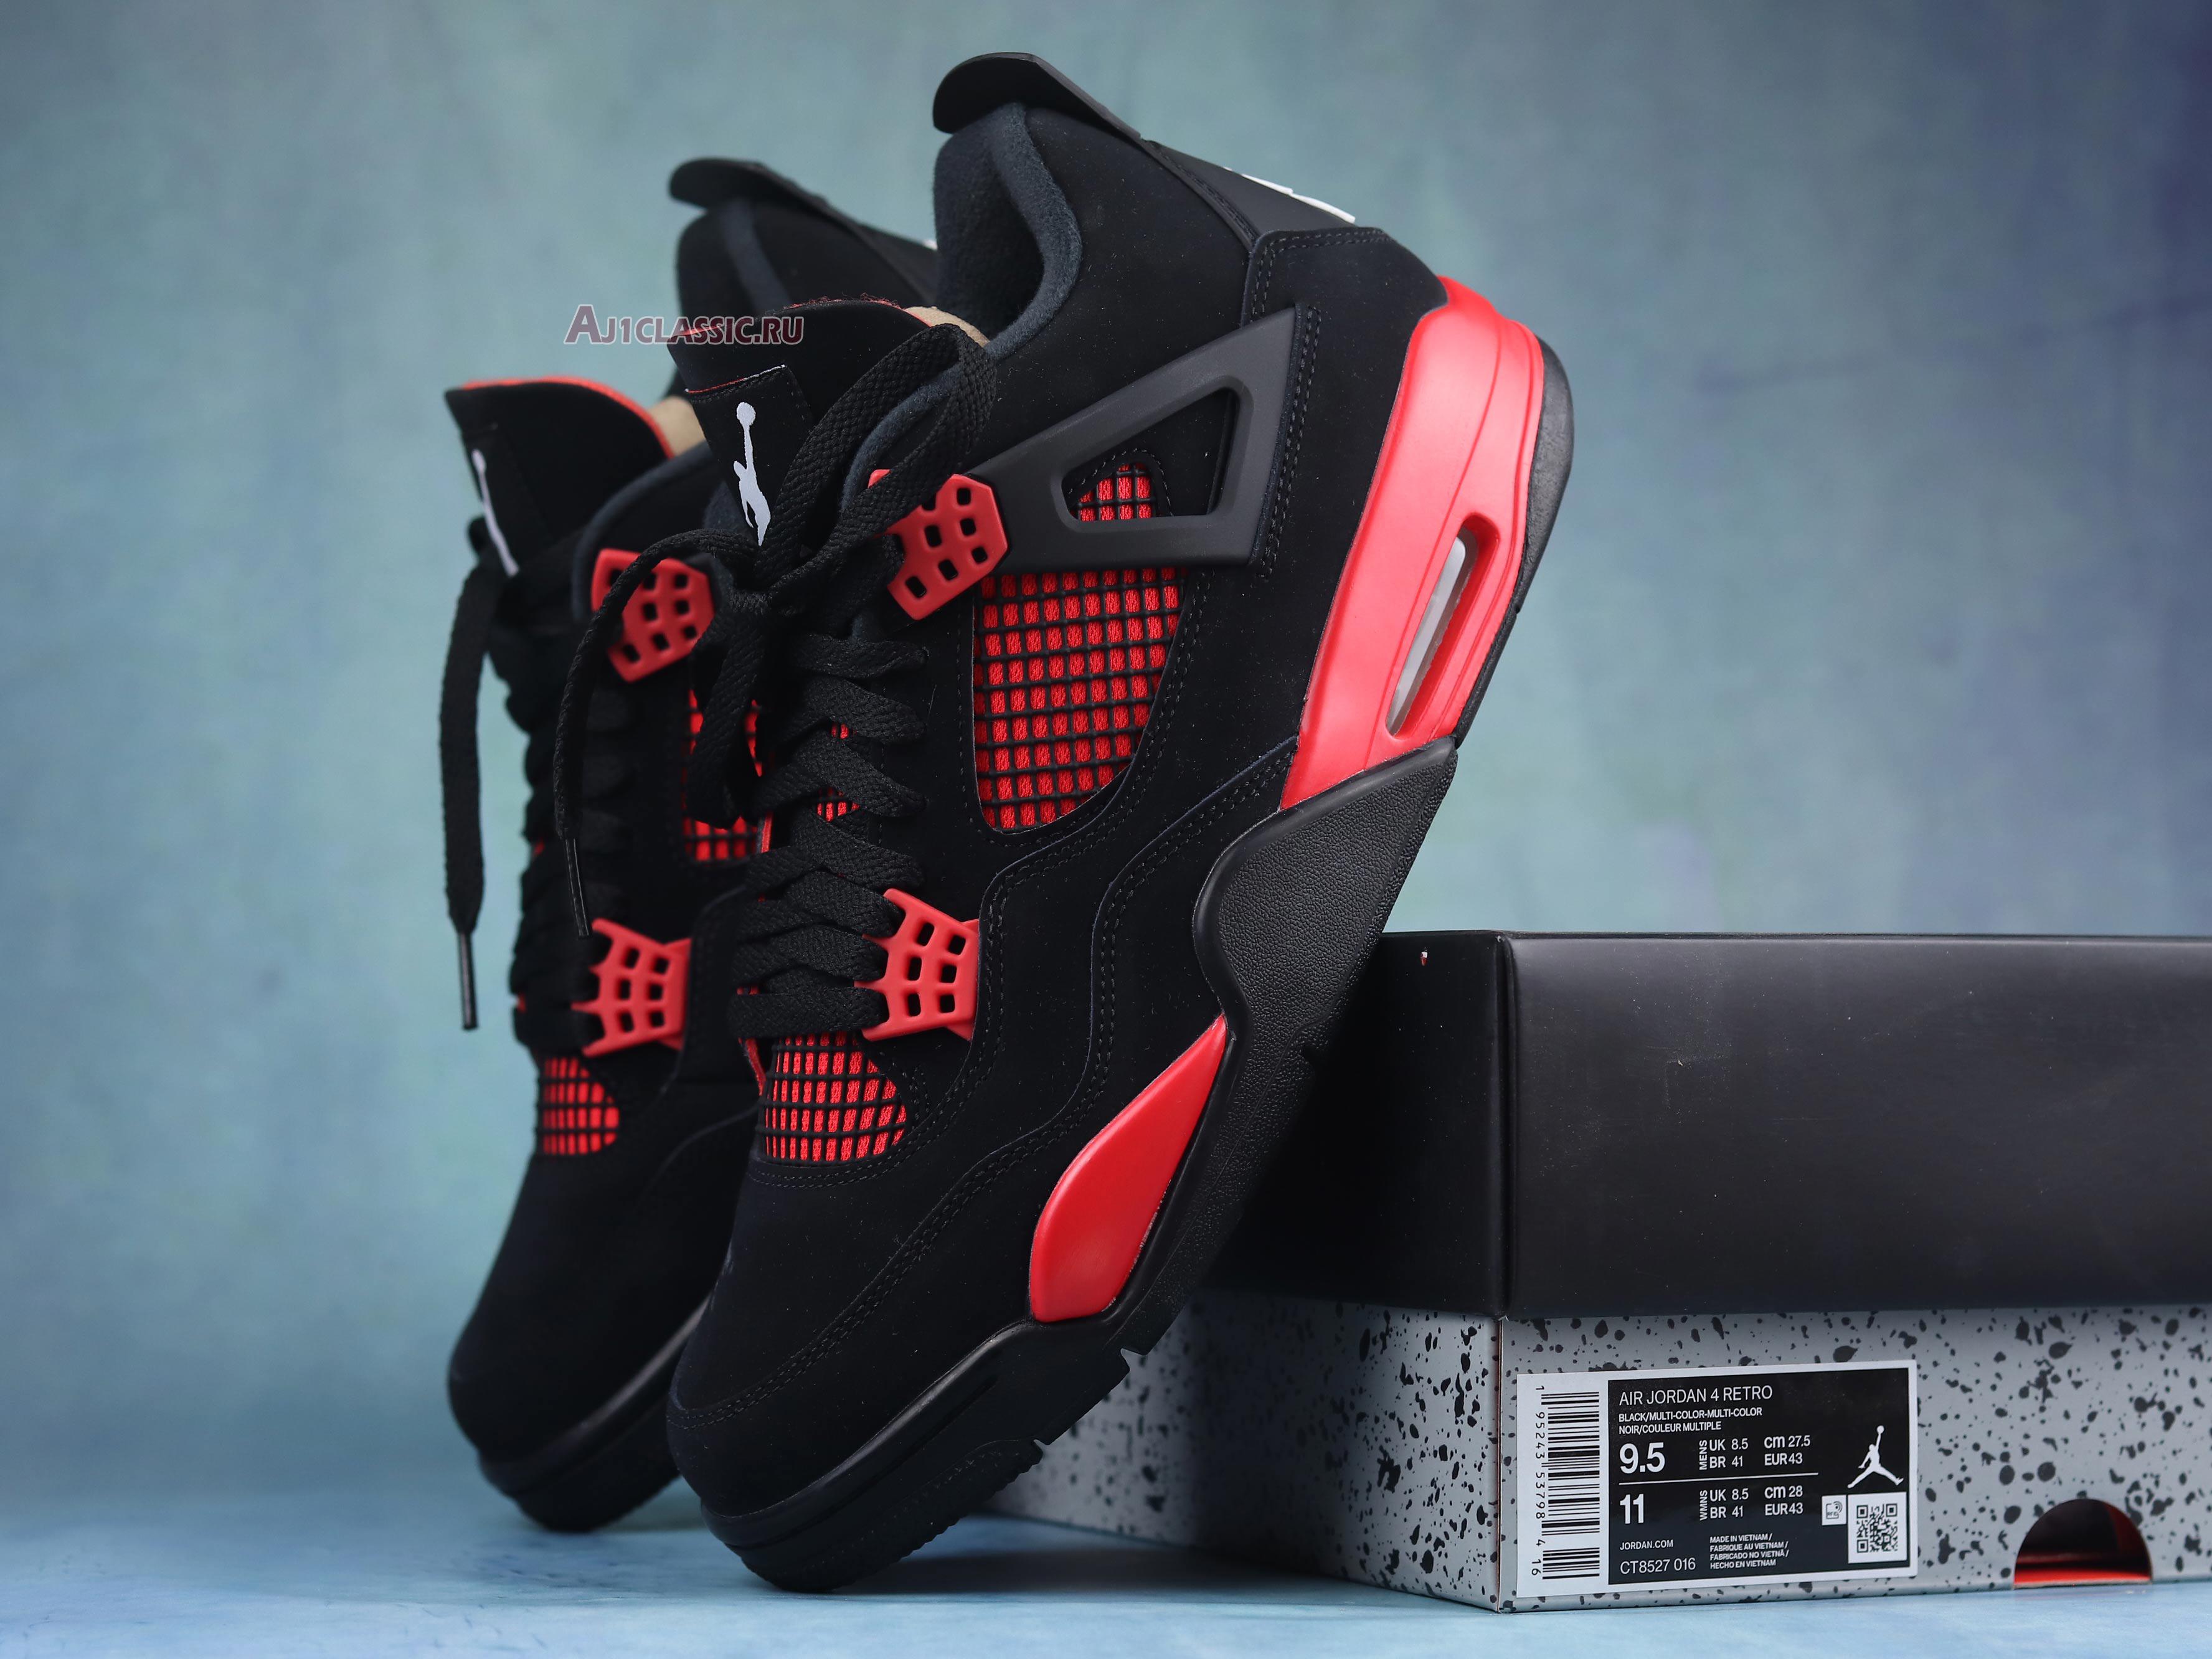 Air Jordan 4 Retro Red Thunder CT8527-016-02 Black/Red Sneakers